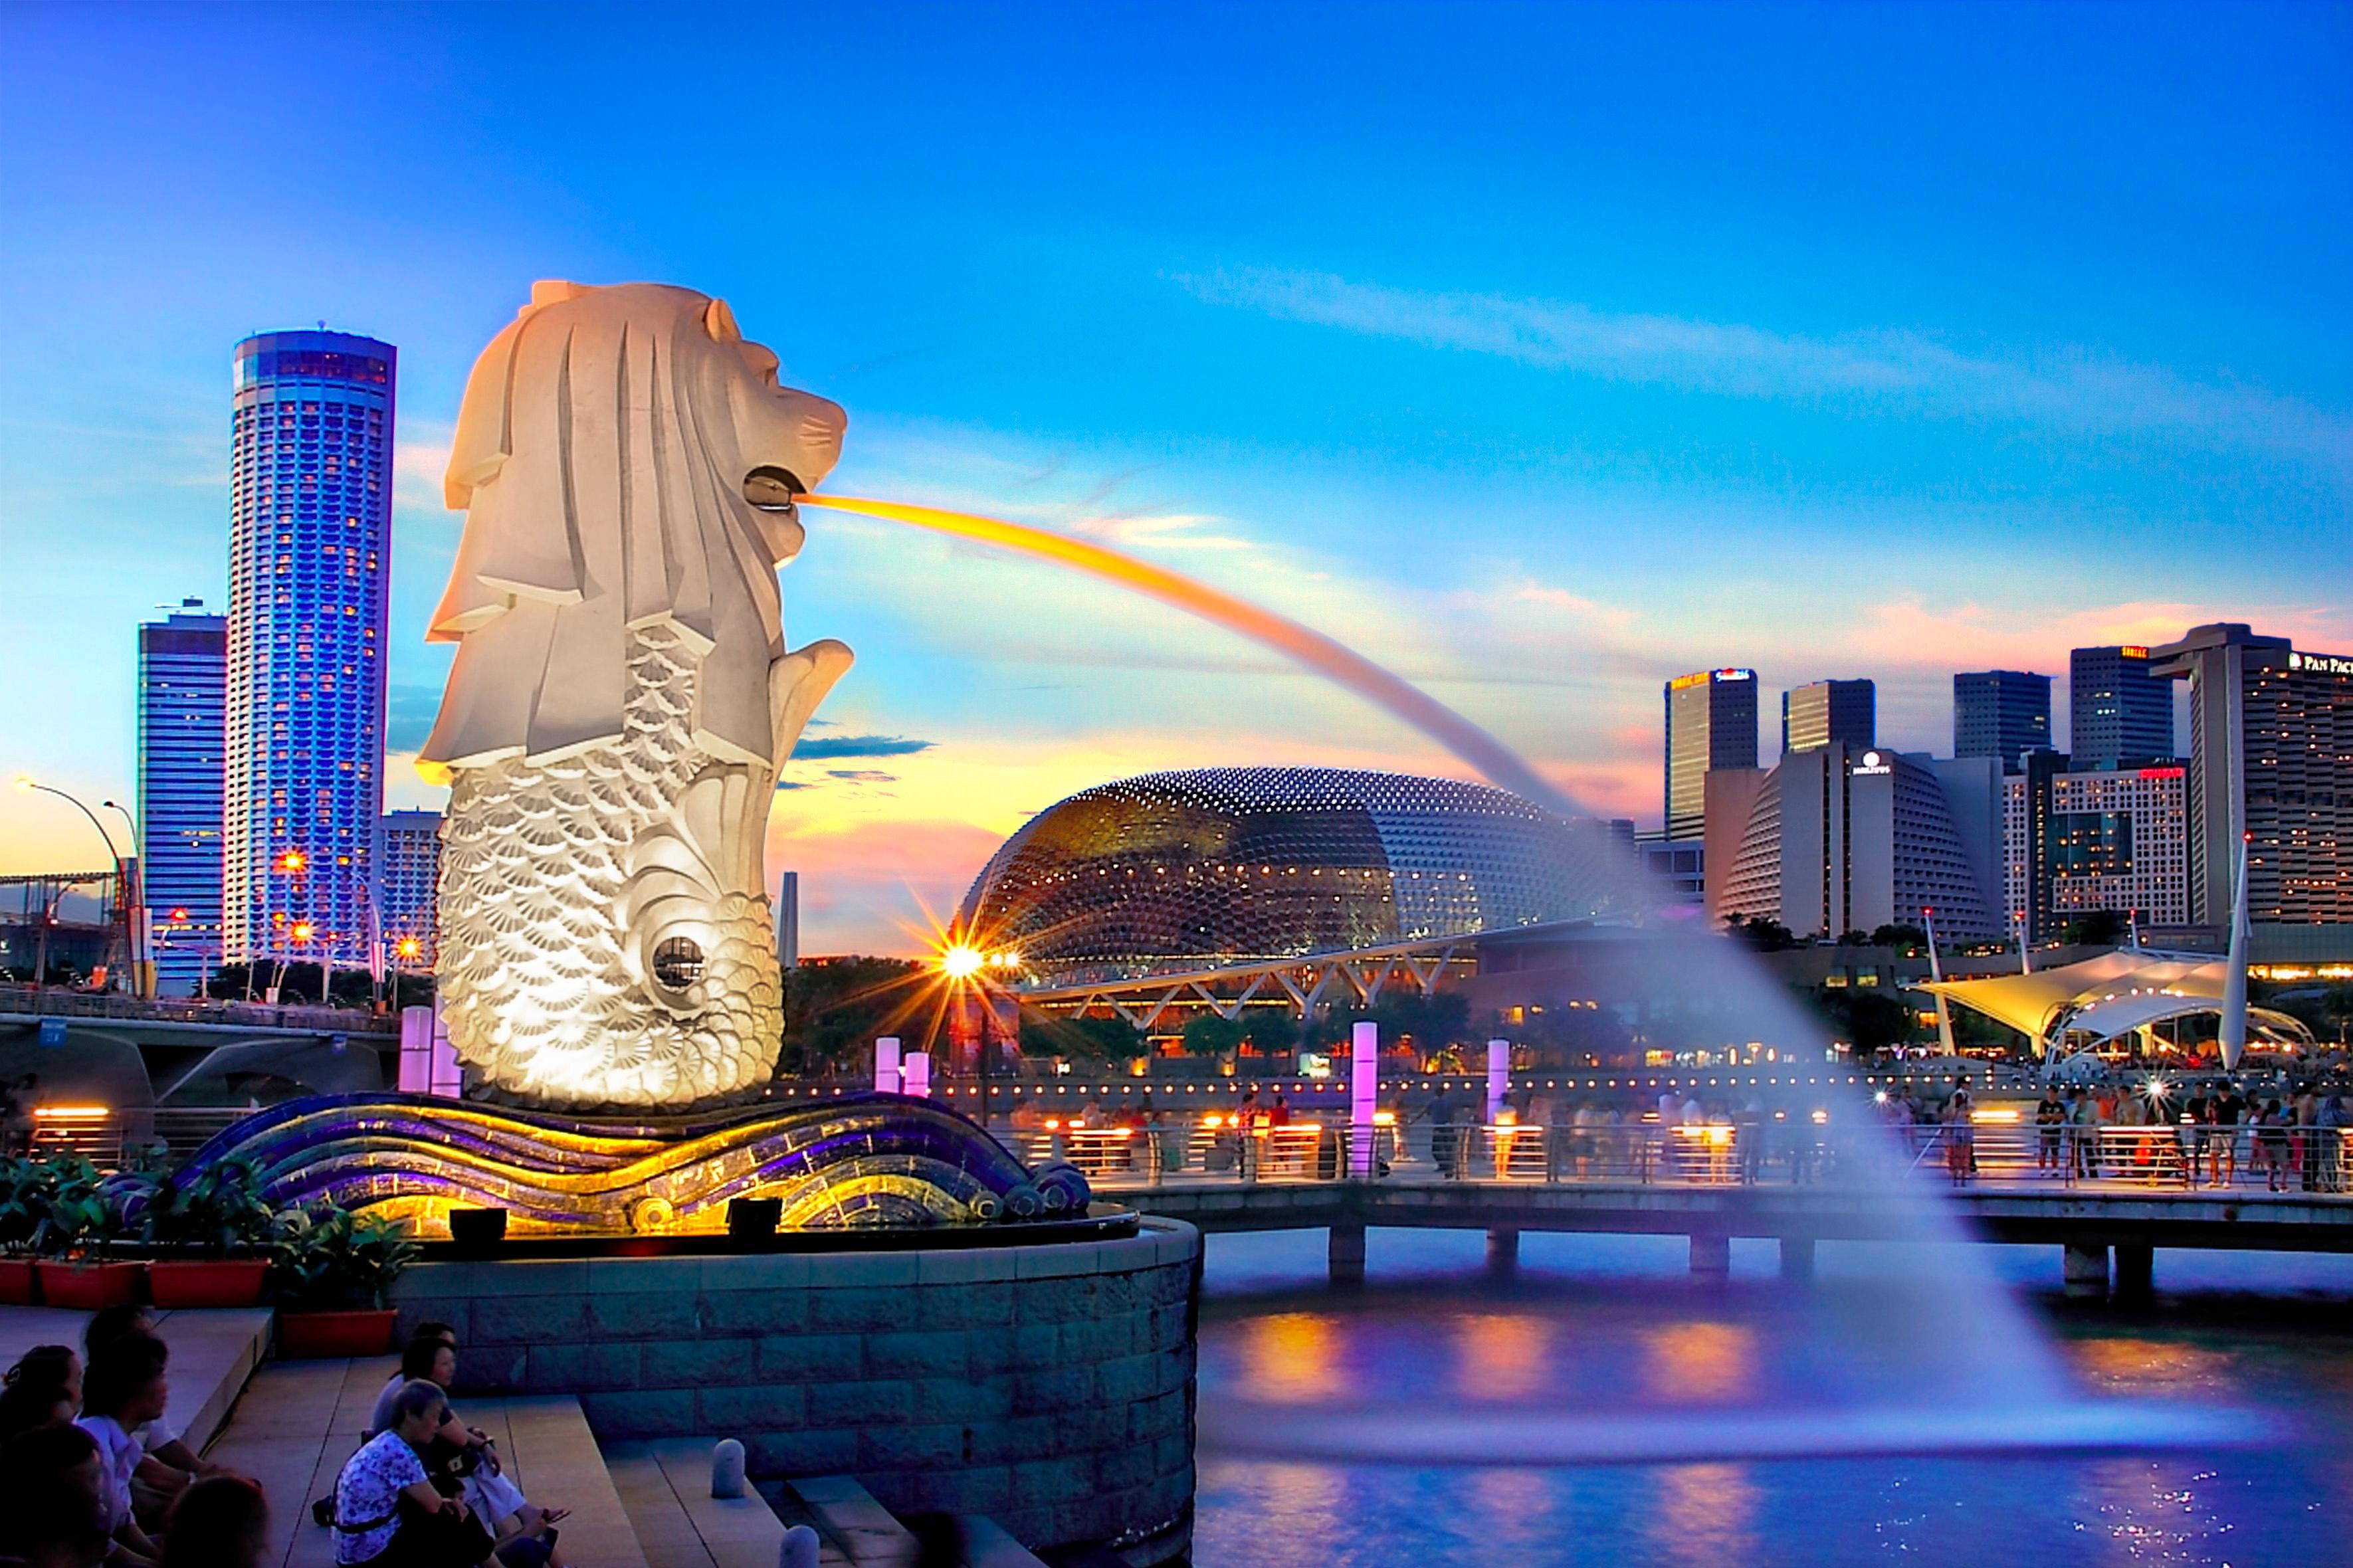 सिंगापुरद्वारा नेपाललाई यात्रा प्रतिबन्धमा फुकुवा, अक्टोबर २६ देखि क्वारेन्टिबिनै प्रवेश पाउने